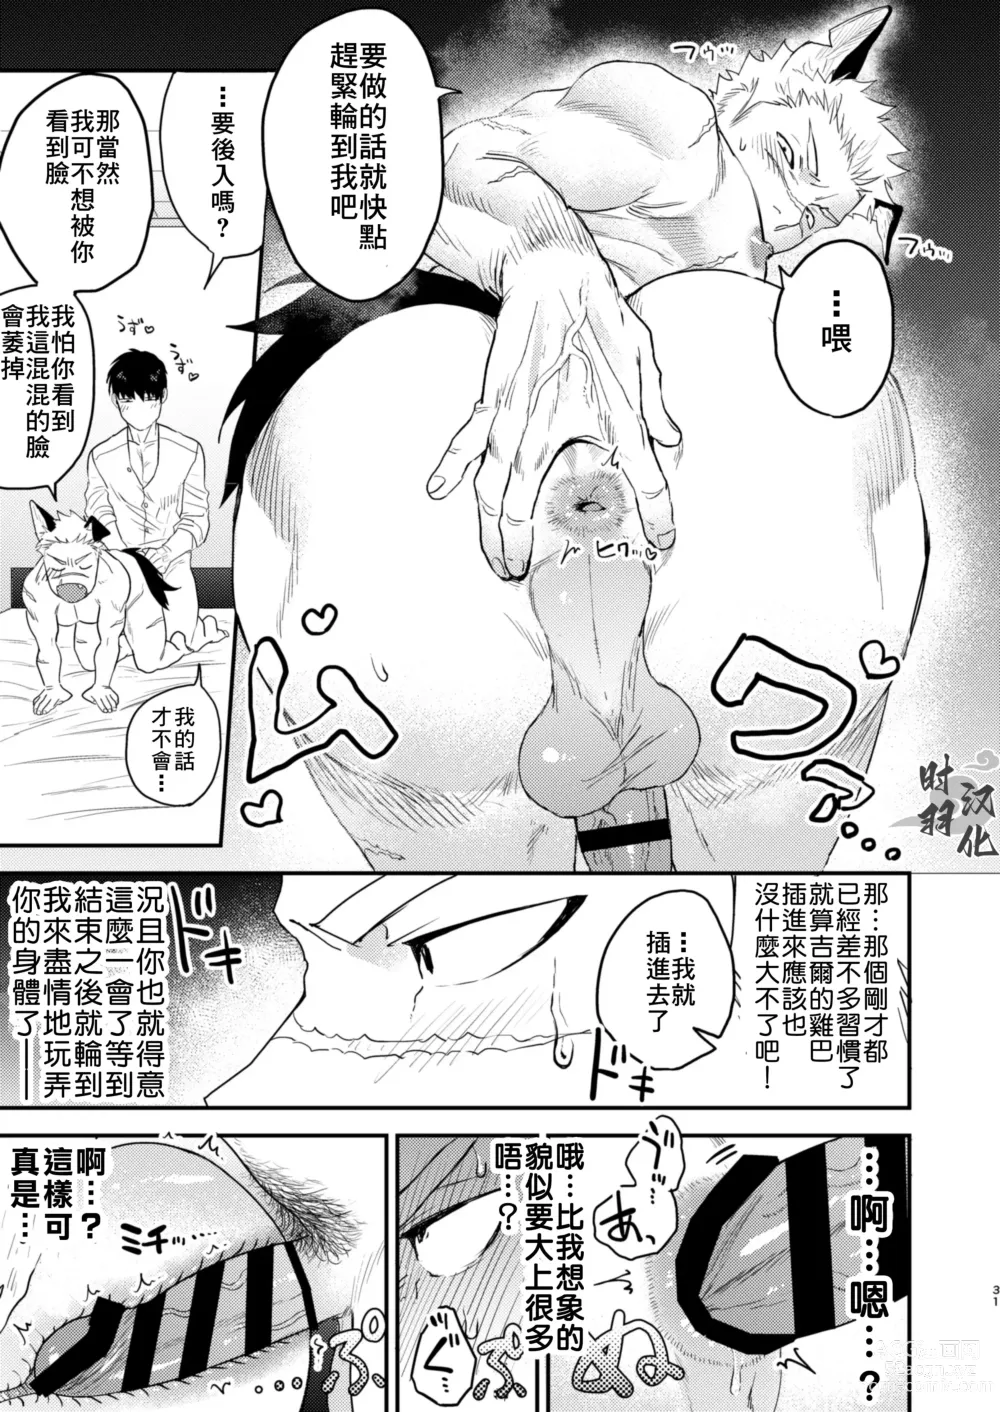 Page 28 of doujinshi 你這條進入發情期的忠犬就由我這主人來幫忙吧